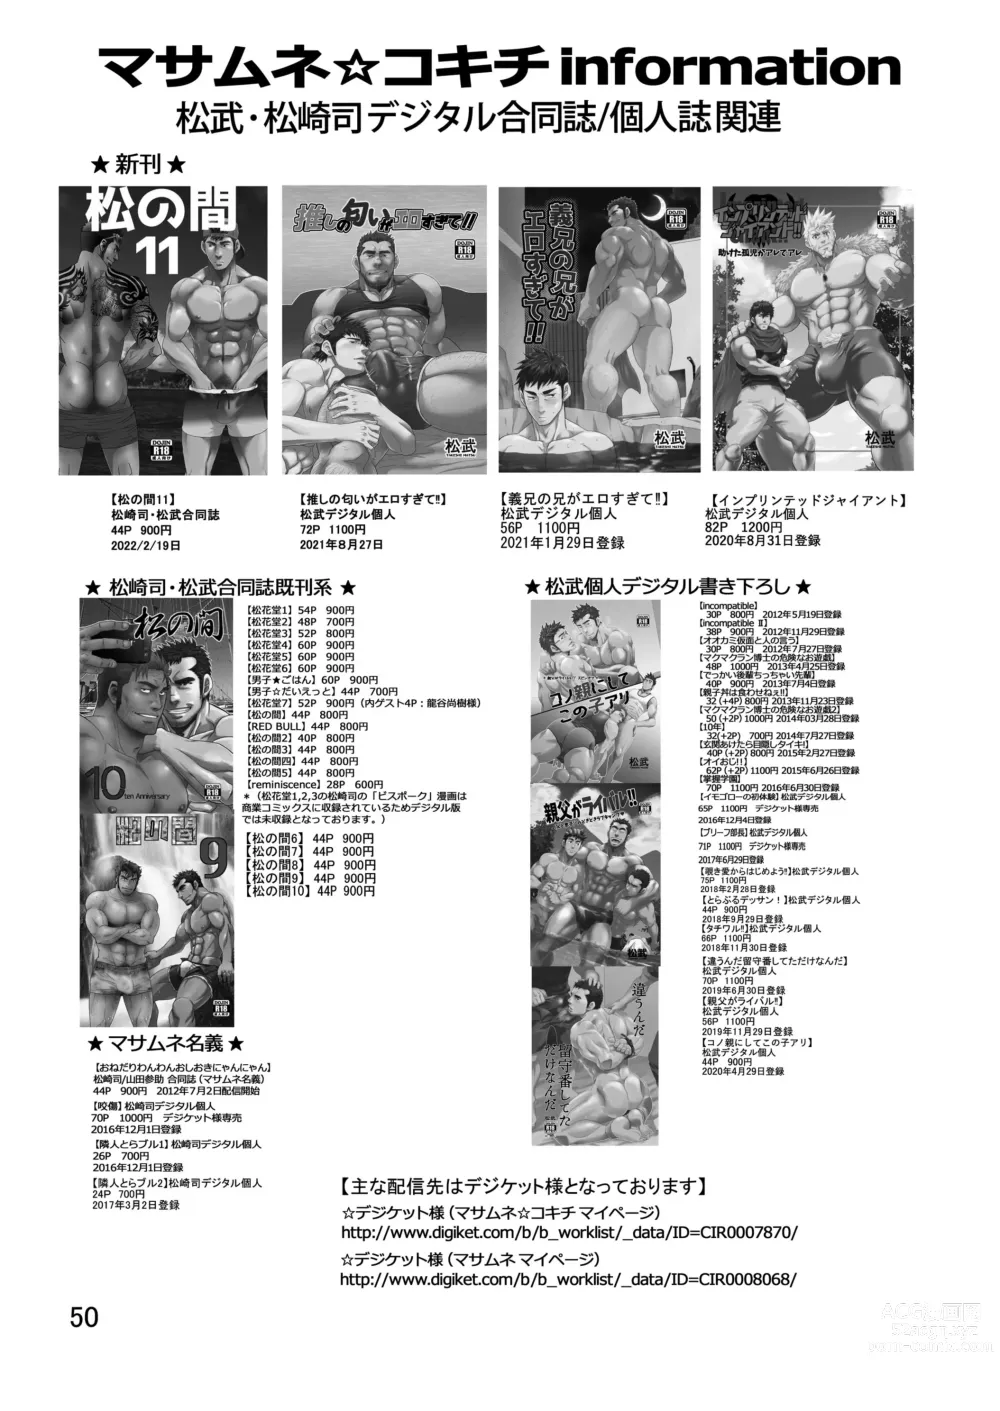 Page 50 of manga 松武互悦同衆!!_旅の恥はヌキすて